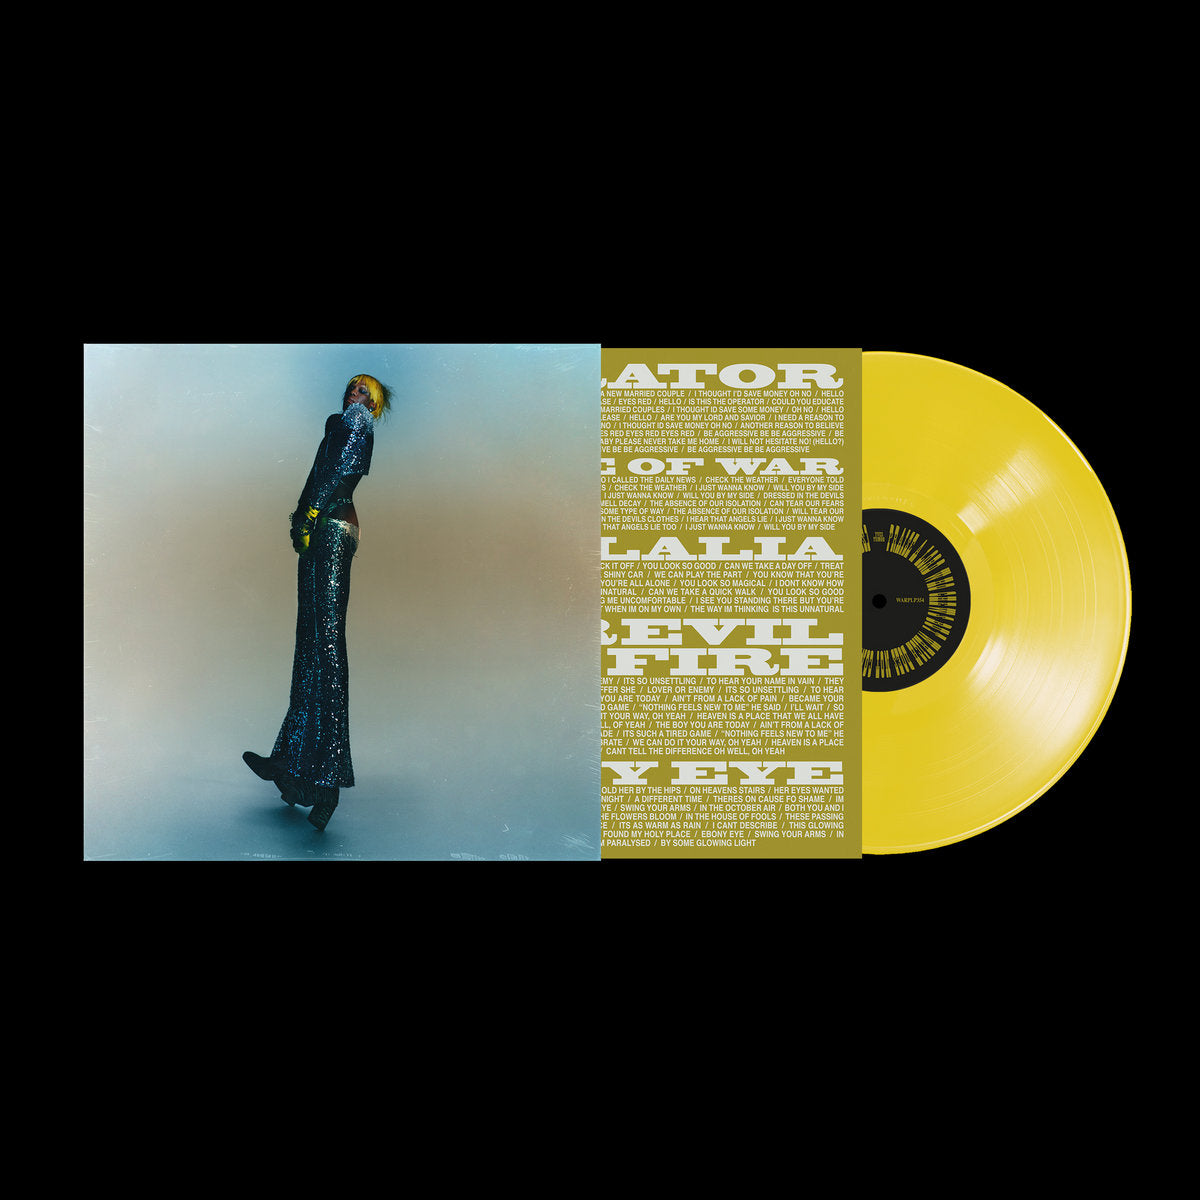 Noah Kahan - Stick Season: Vinyl 2LP - Sound of Vinyl